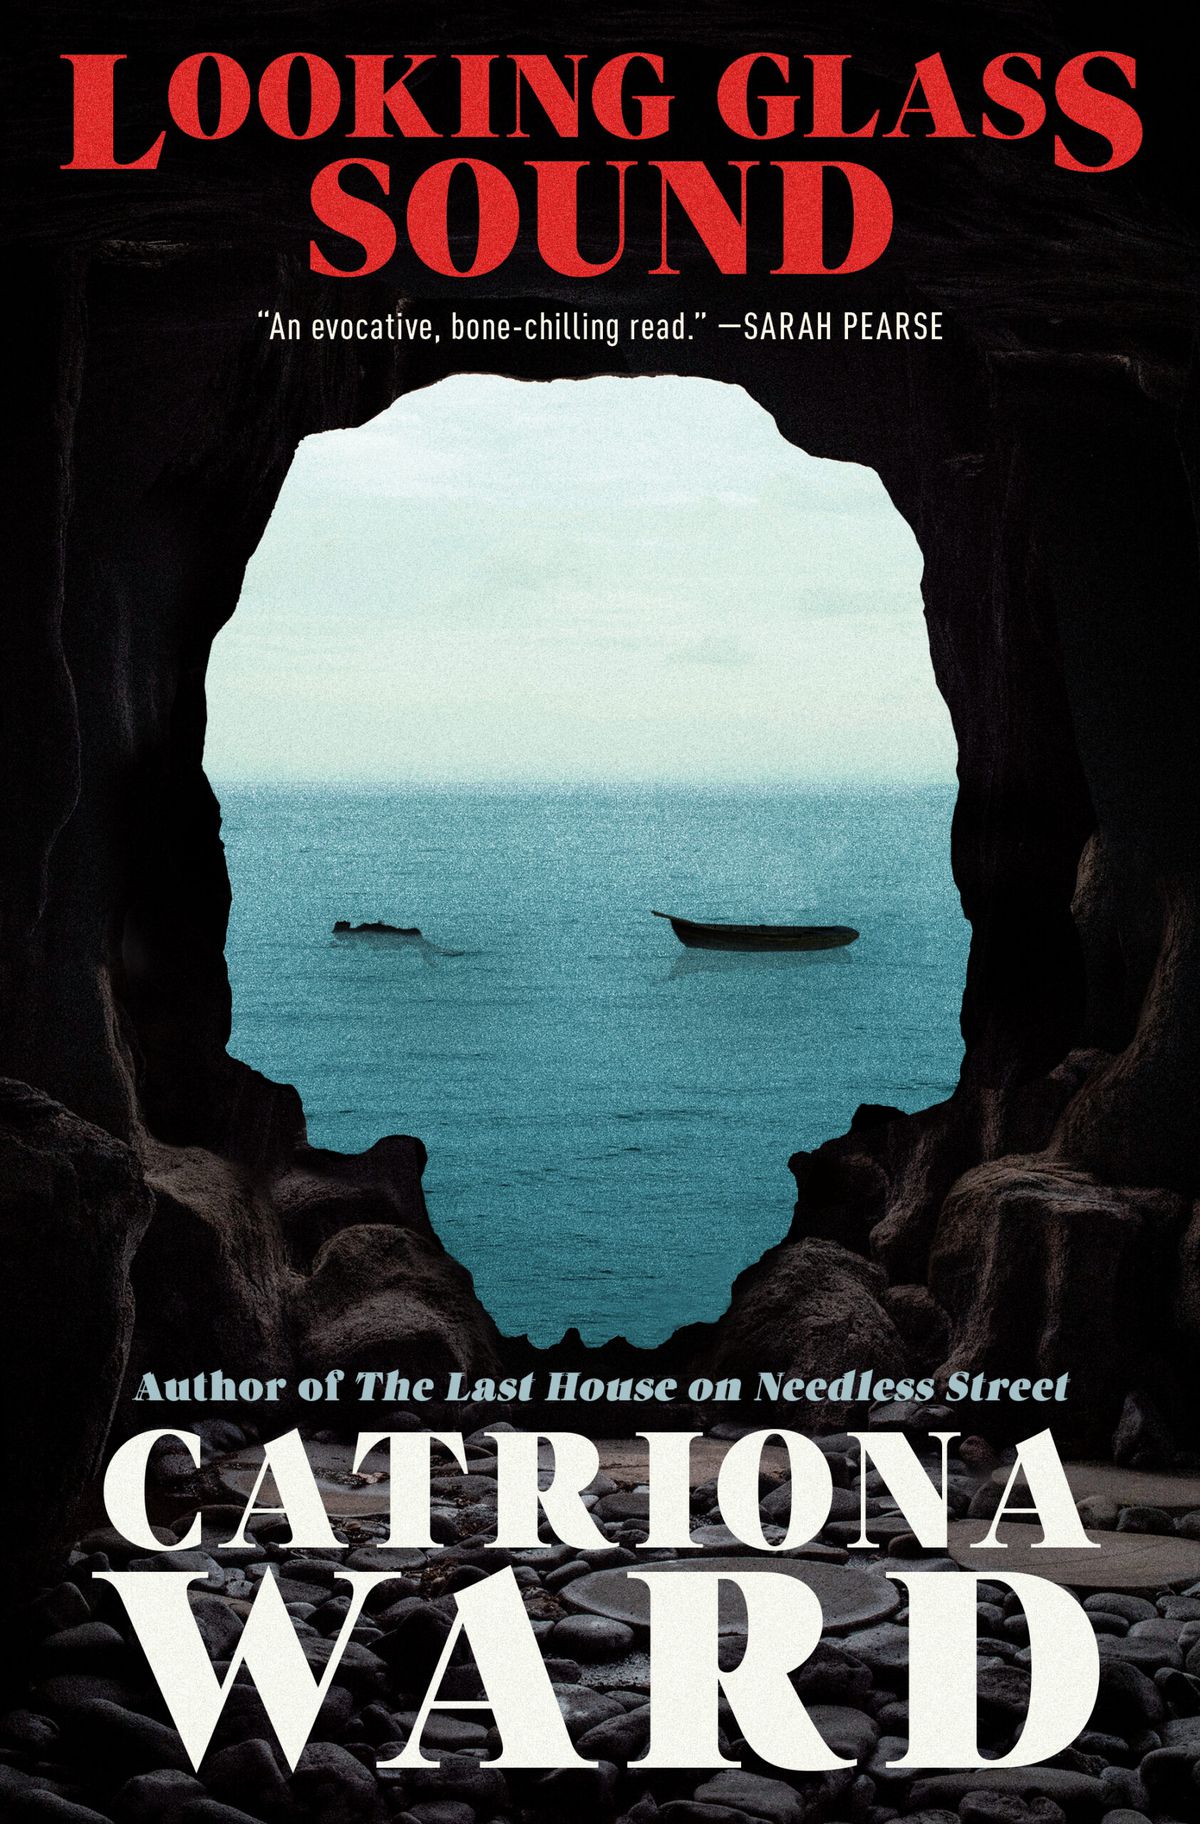 Immagine di copertina di Looking Glass Sound di Catriona Ward.  L'immagine è dall'interno di una grotta, con un'uscita a forma di teschio nell'oceano, dove vediamo una barca vuota e una persona che galleggia.